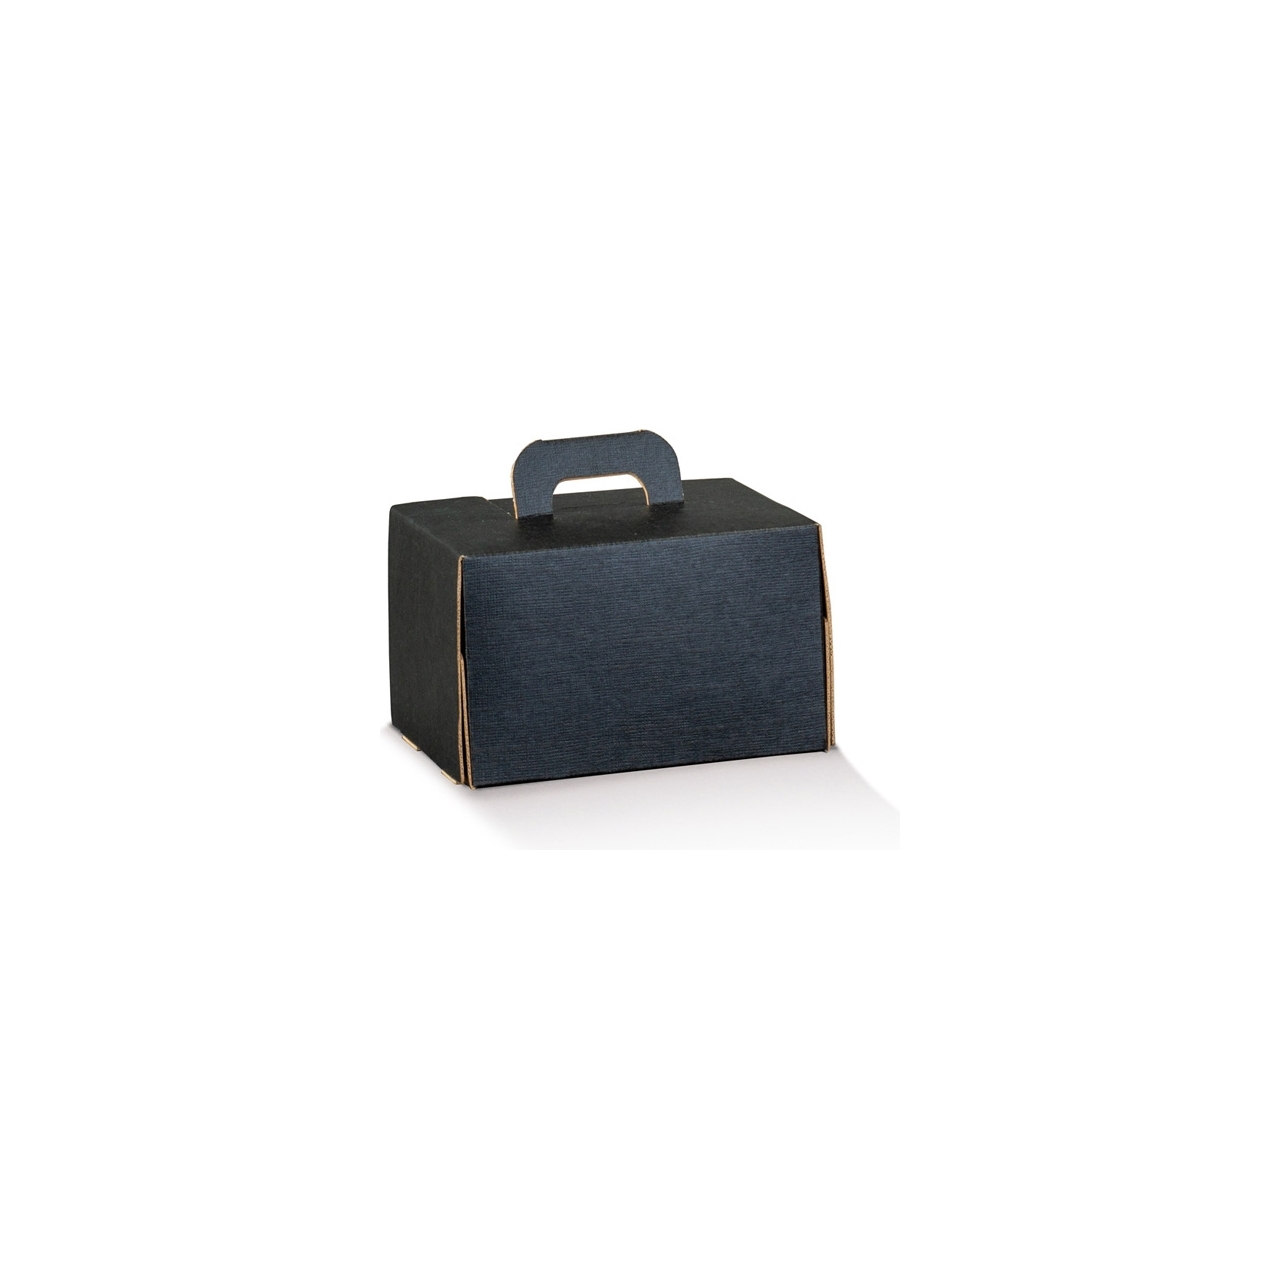 Bauletto in cartoncino colore nero forma rettangolare co manico per take away e delivery vendita all'ingrosso b2b online